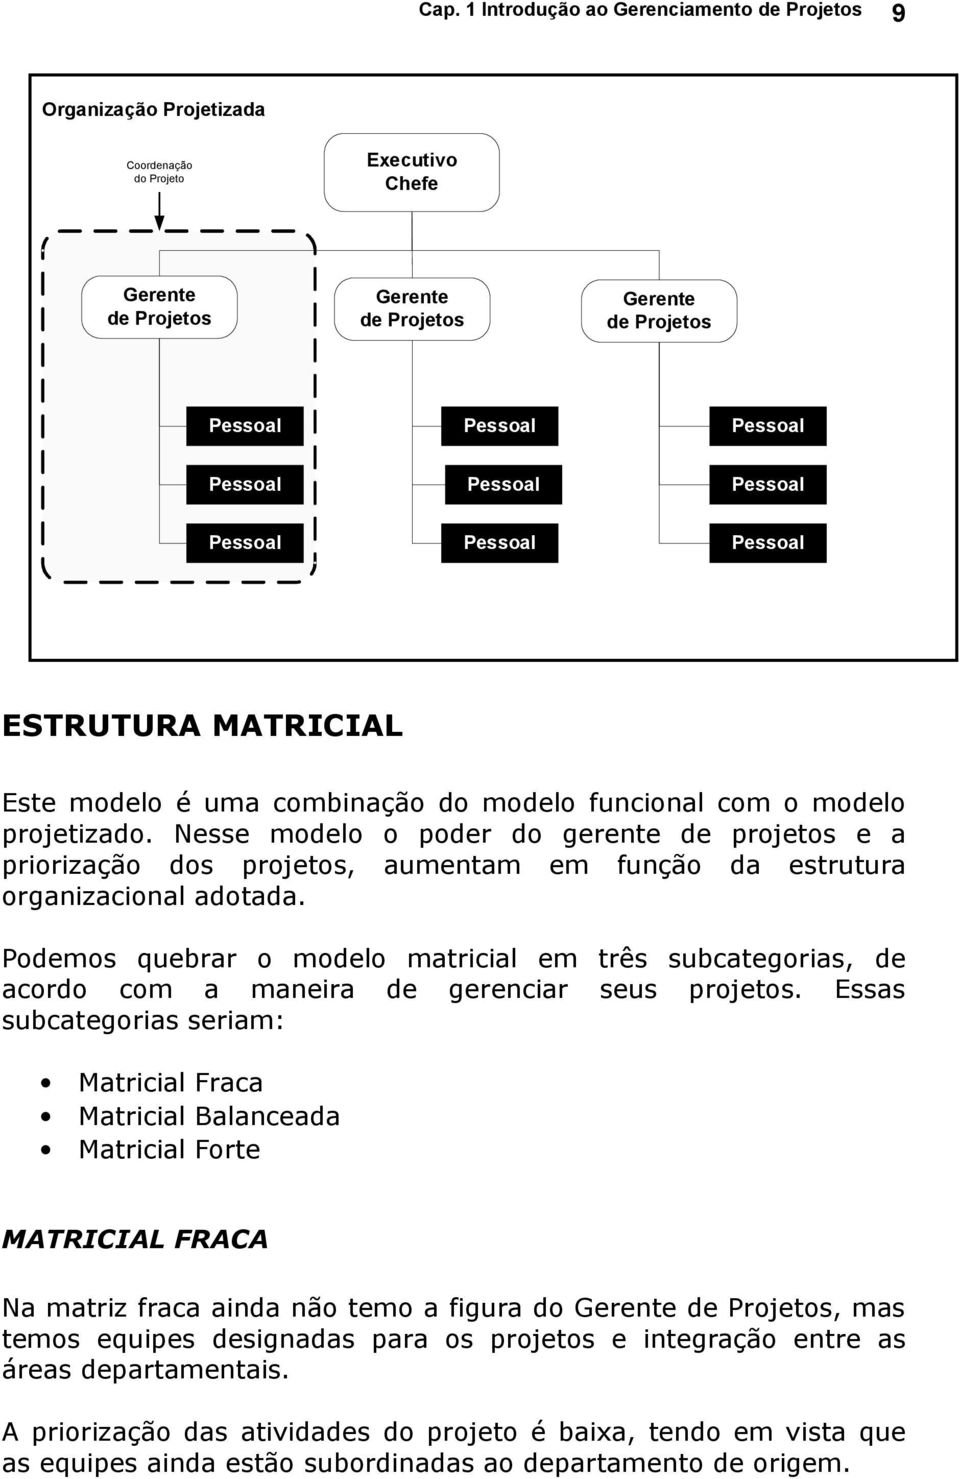 Podemos quebrar o modelo matricial em três subcategorias, de acordo com a maneira de gerenciar seus projetos.